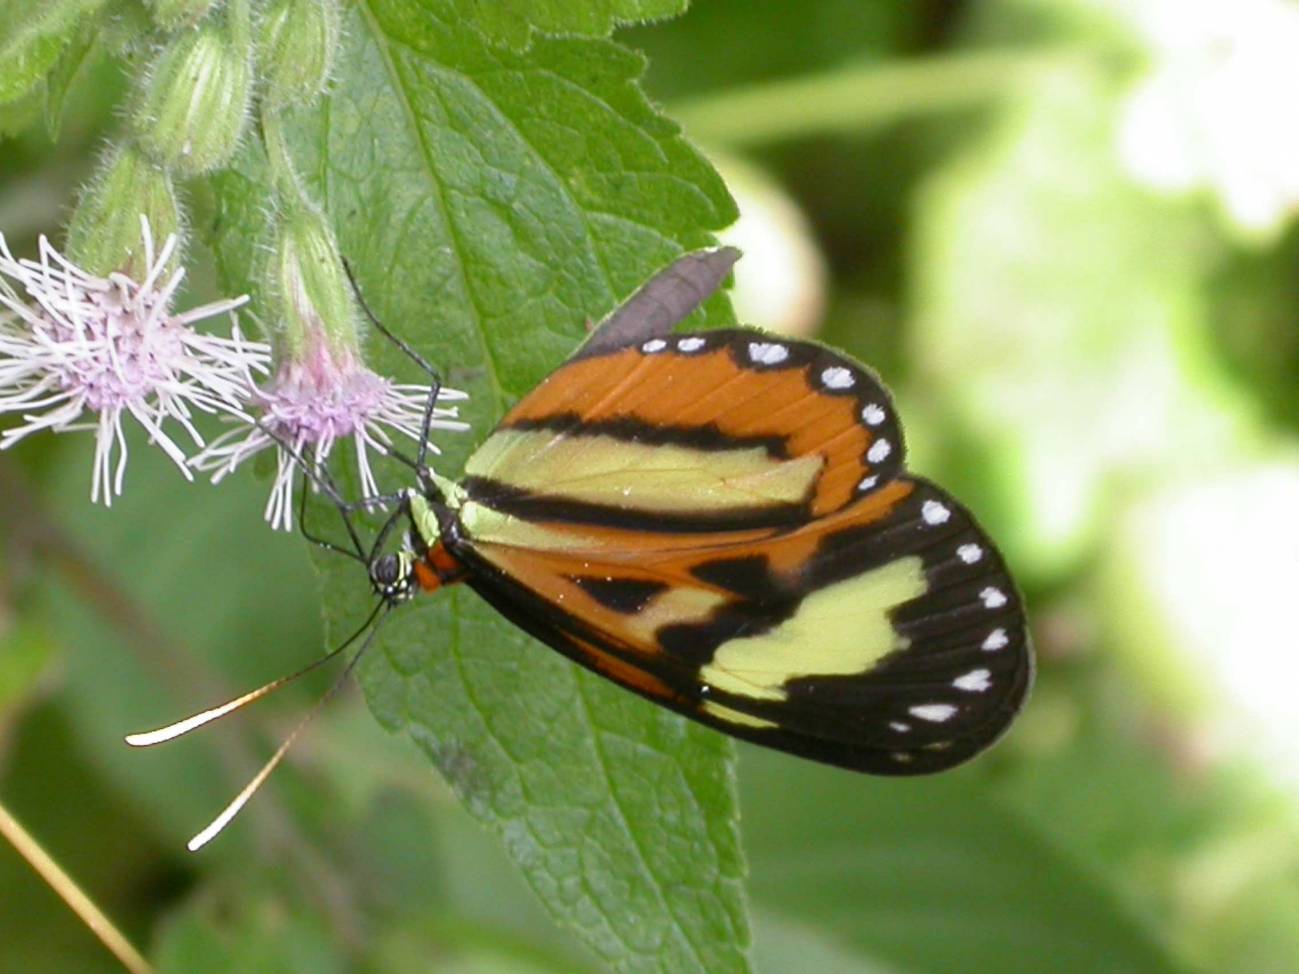 La mariposa Hypothyris euclea en una flor de la Serra do Japi, uno de los vestigios más importantes de bosque nativo en el Estado de Sao Paulo.